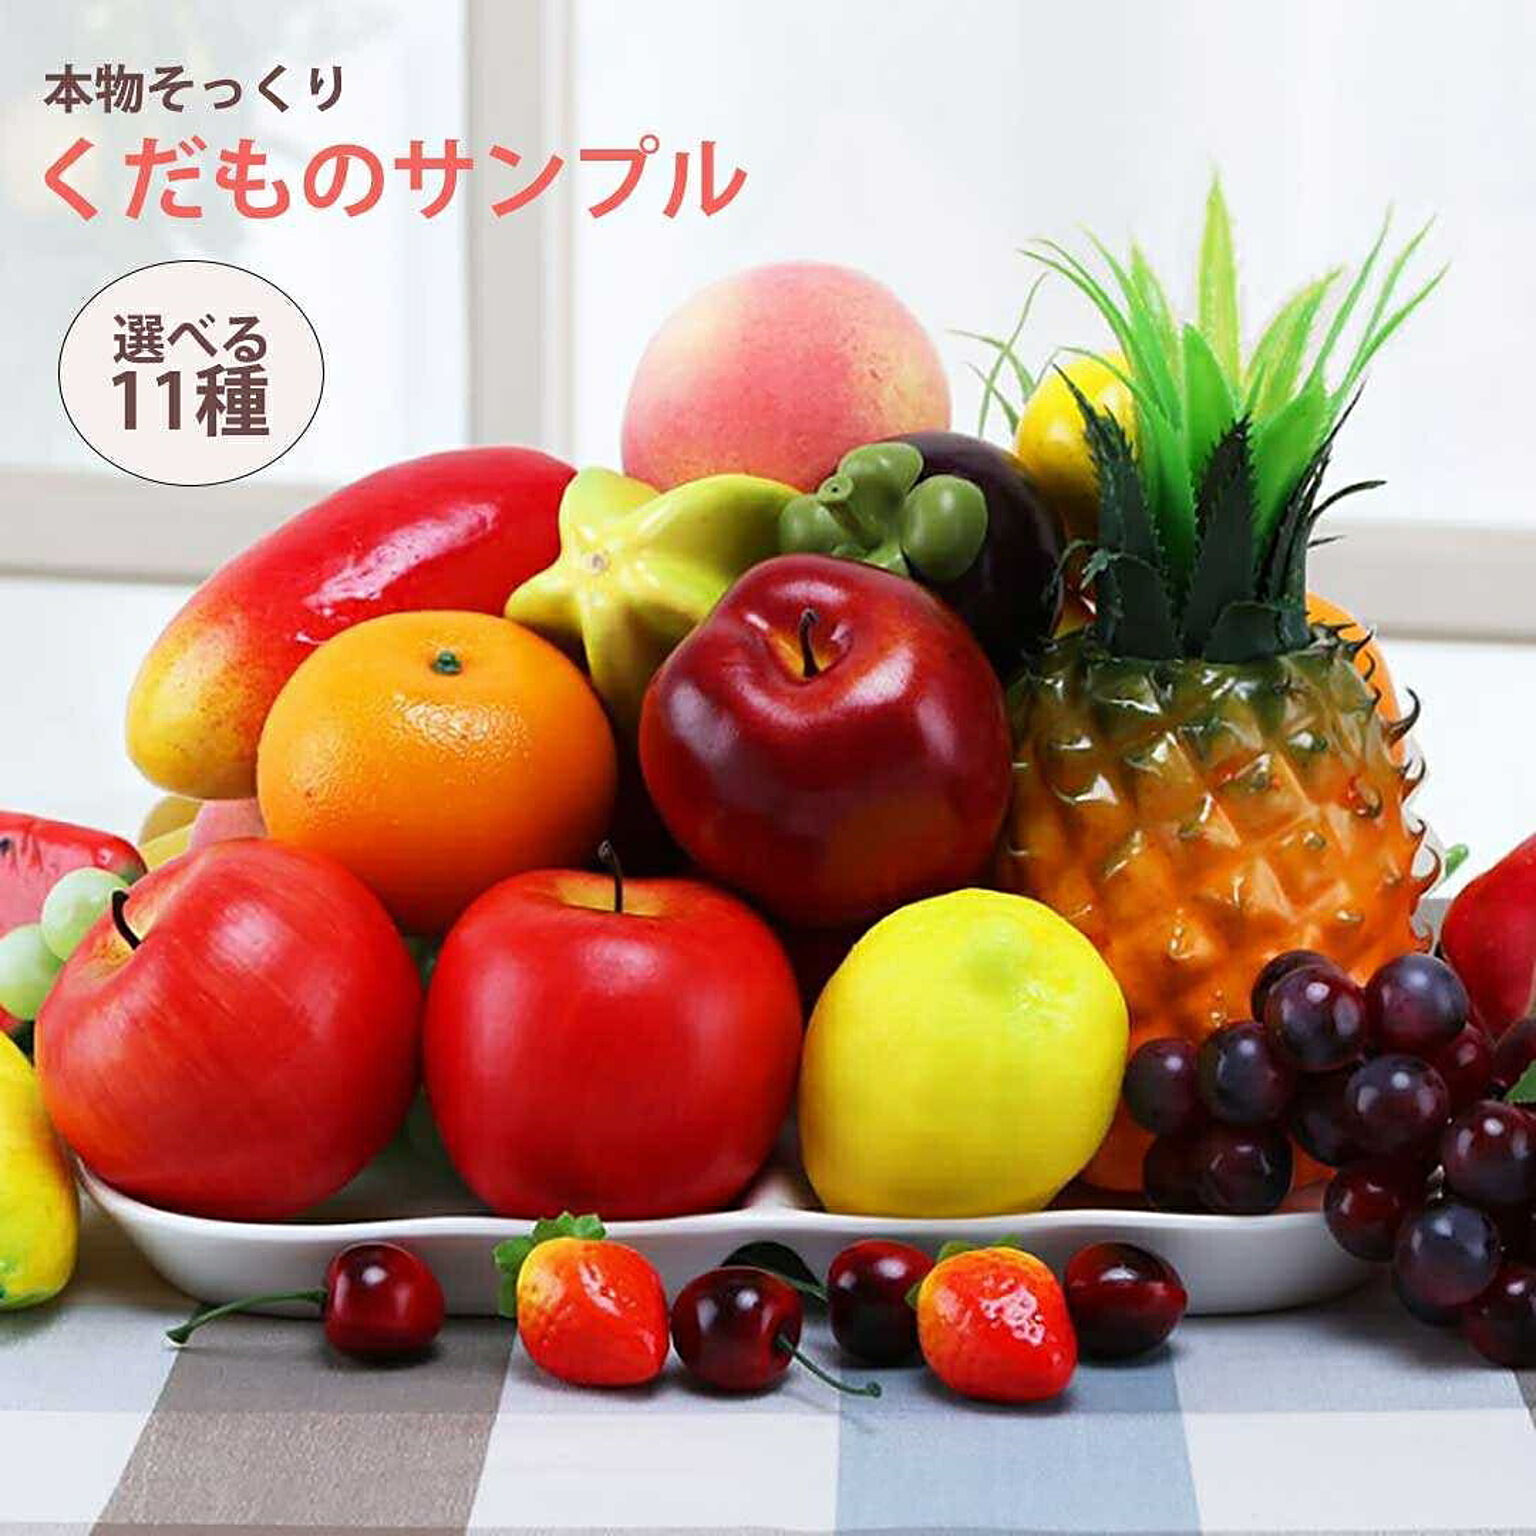 食品サンプル フルーツ 果物 くだもの 11種類 サンプル品 見本 見本品